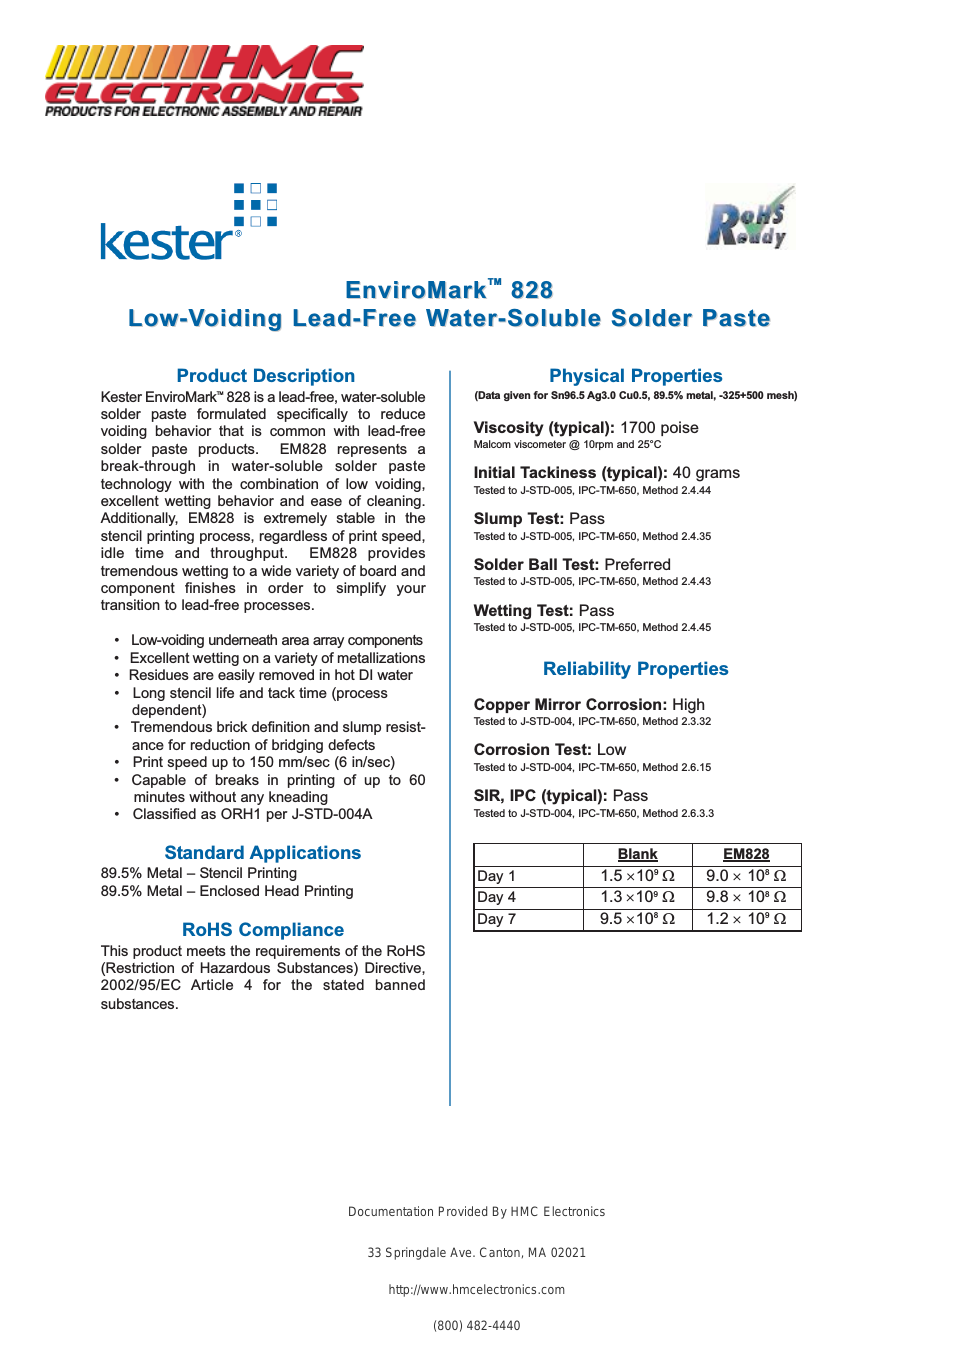 EM828 Kester Lead-Free Solder Paste